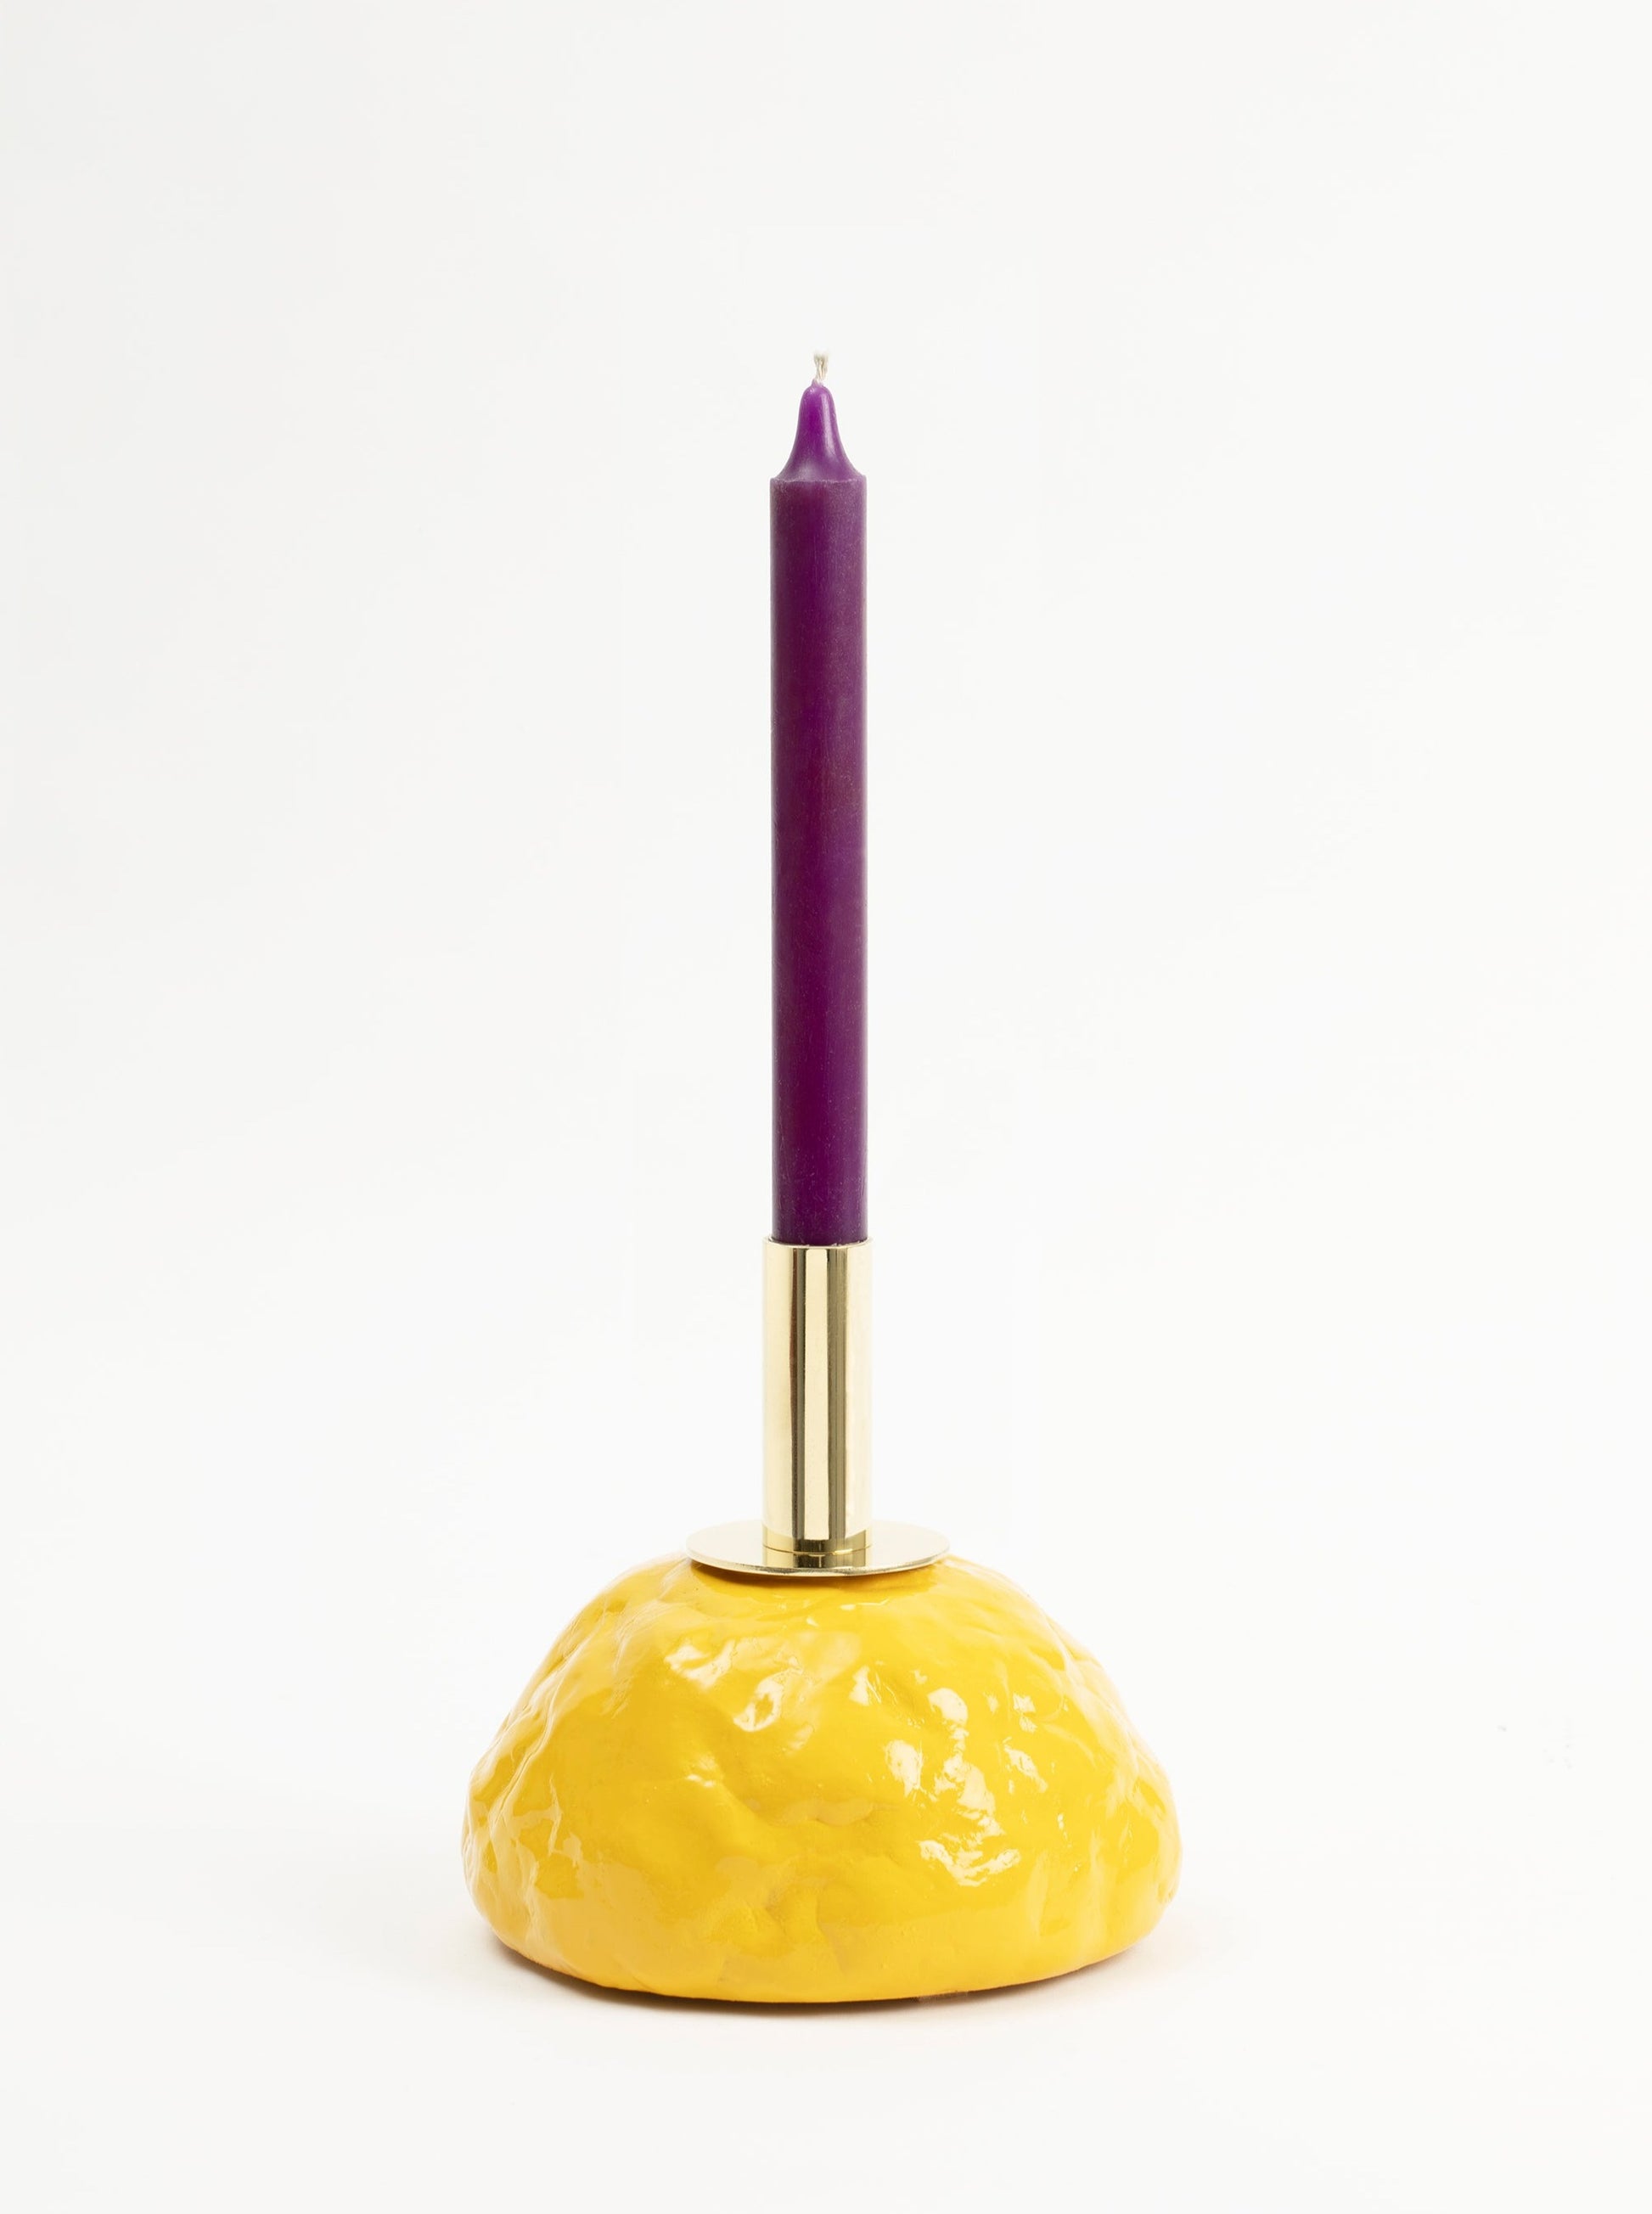 Bougeoir jaune au design brut et chic à la fois, en forme originale de sein, couleur vive et touche de laiton. Vincent Loiret pour Haydée.